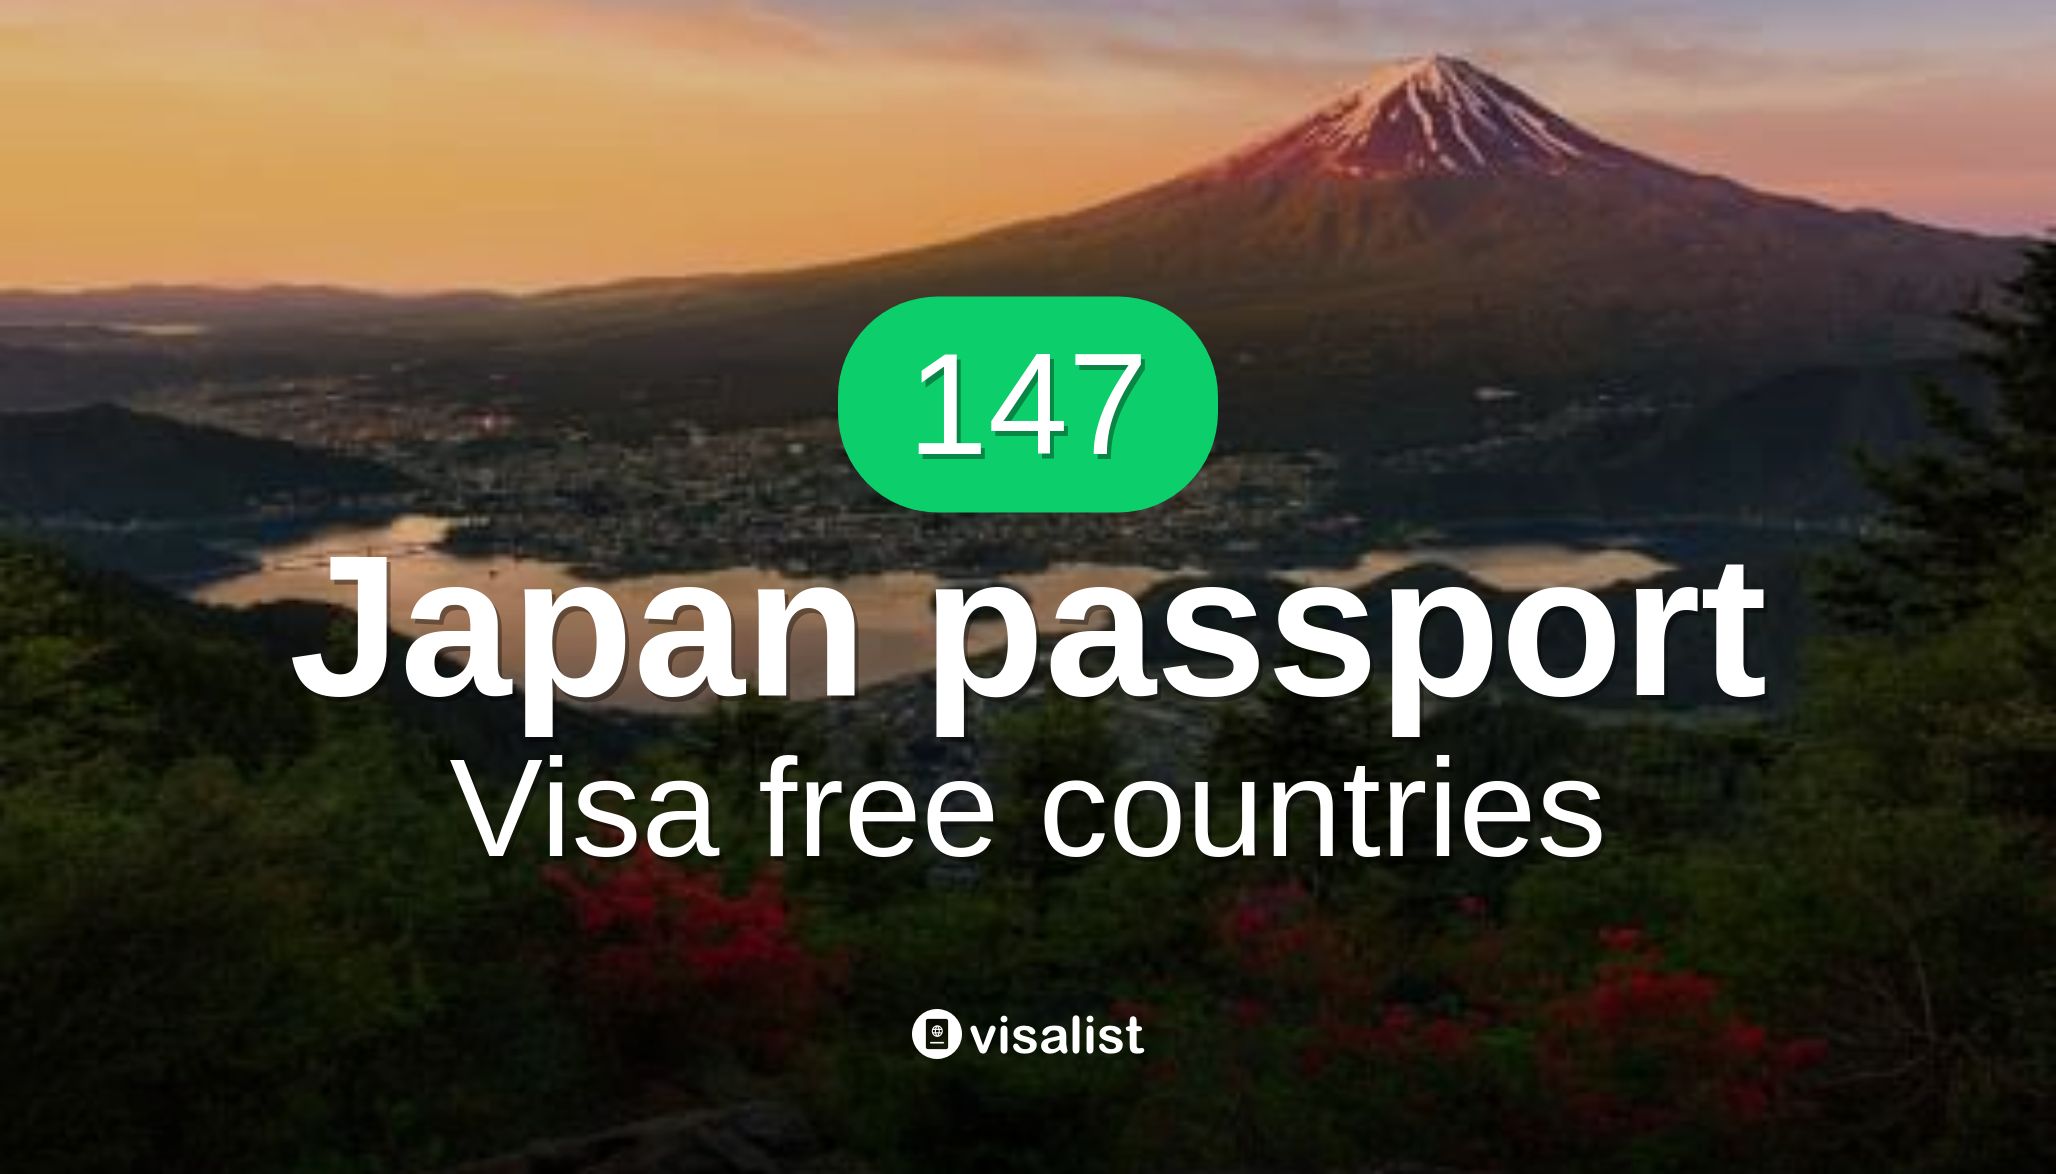 visa free travel japan passport